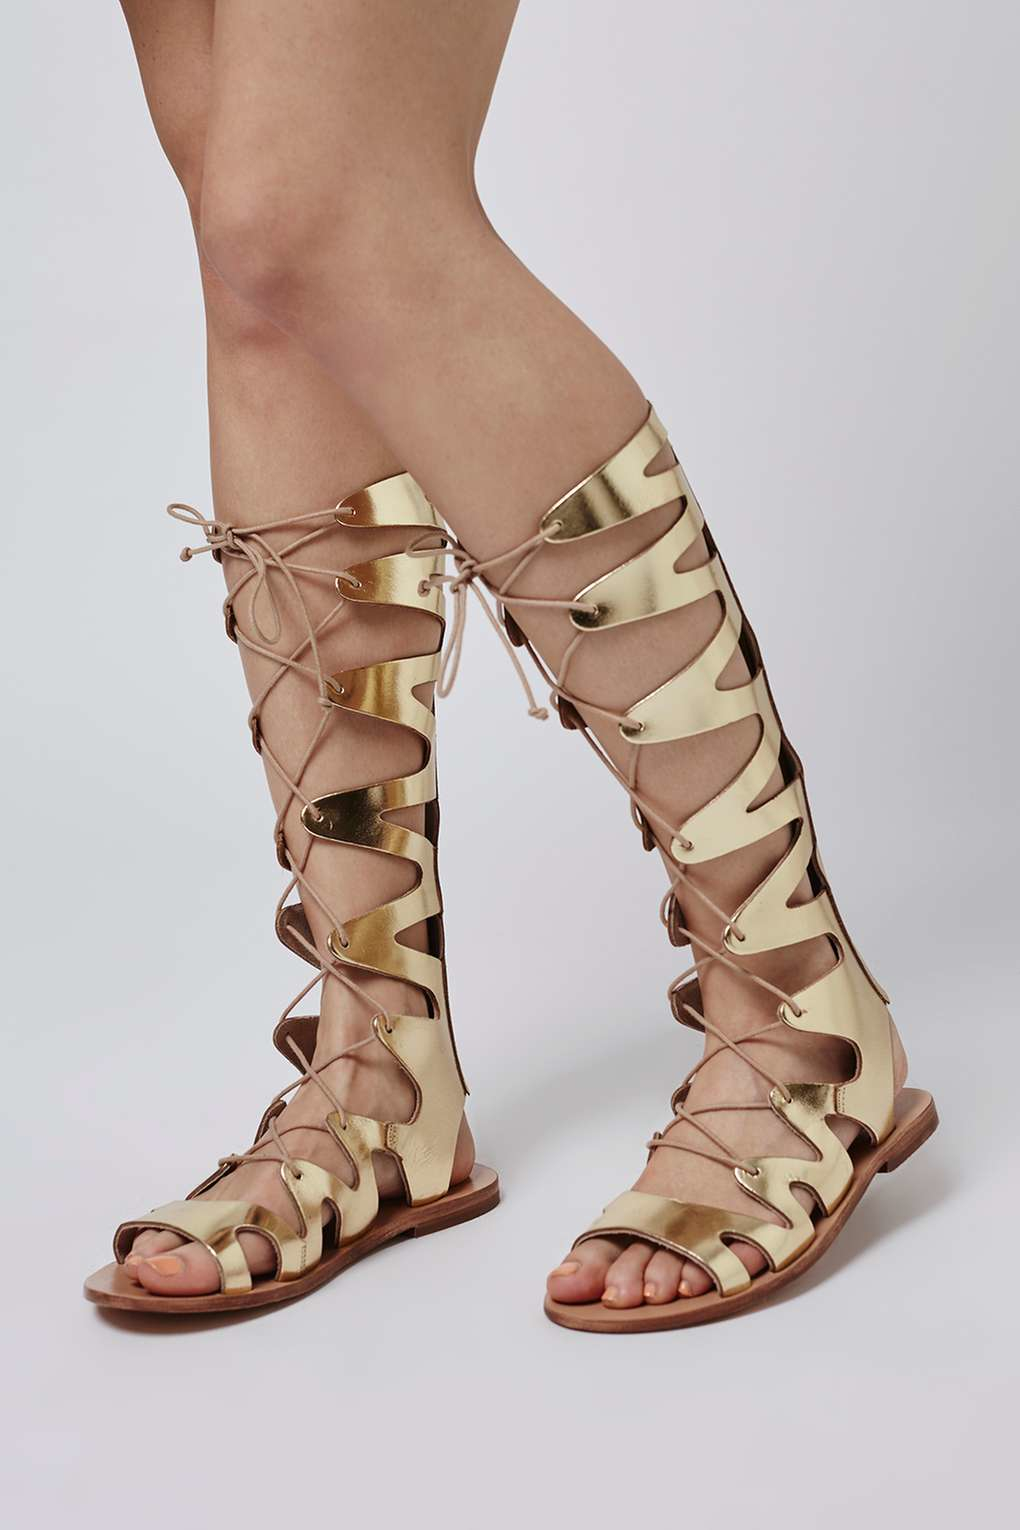 topshop gladiator sandals